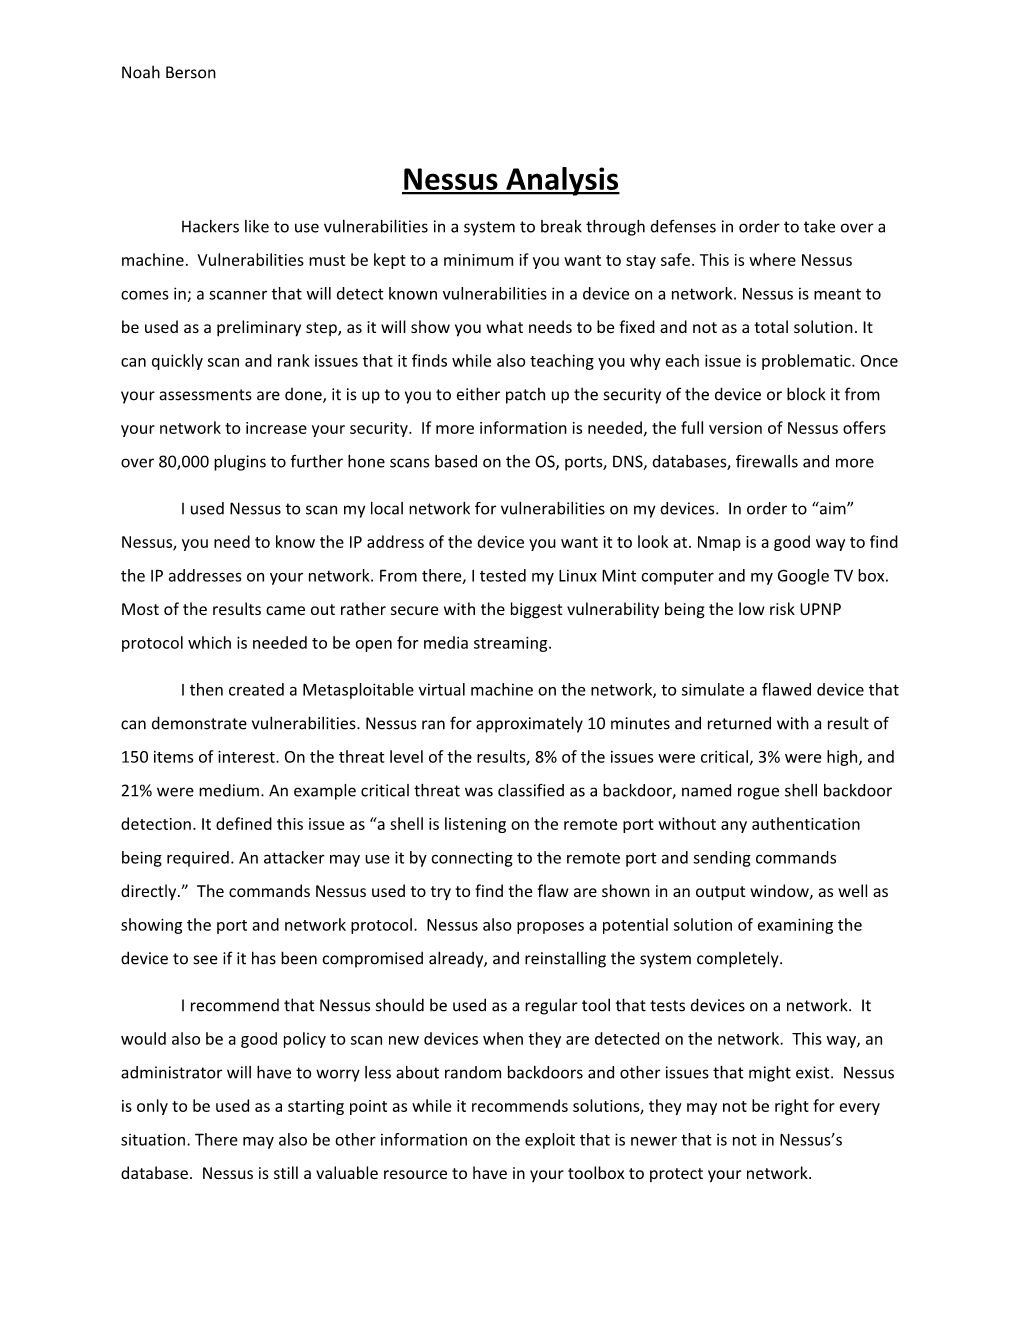 Nessus Analysis